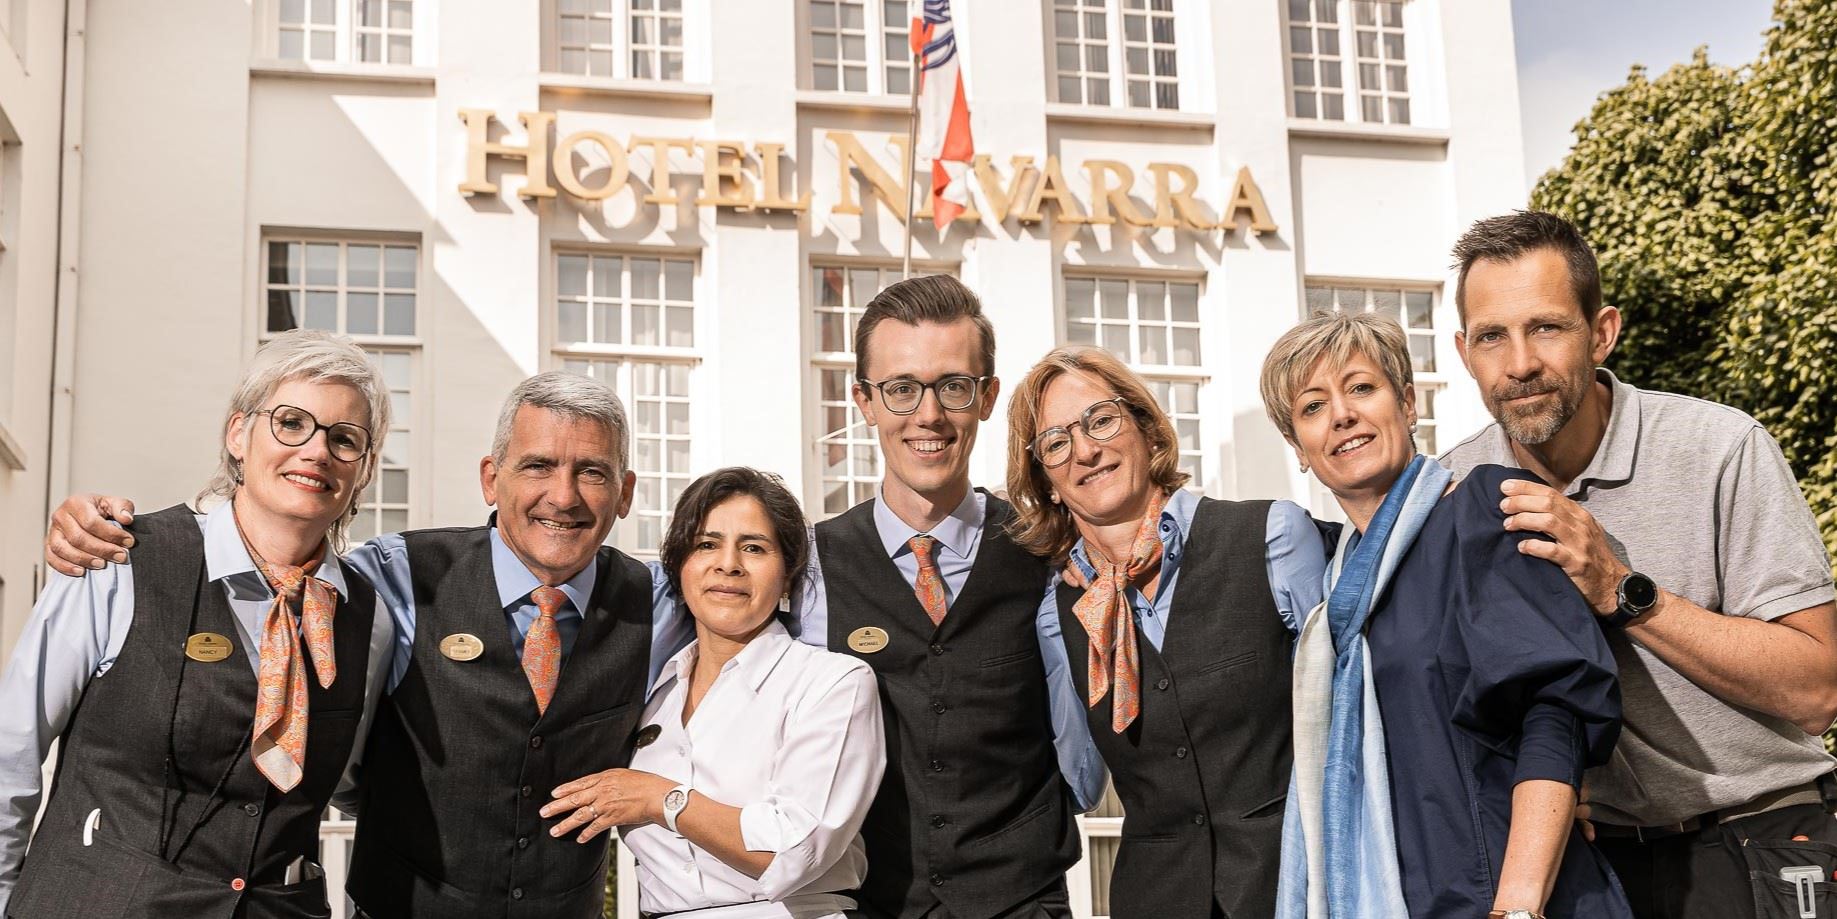 Hotel Navarra Bruges Postes Vacants